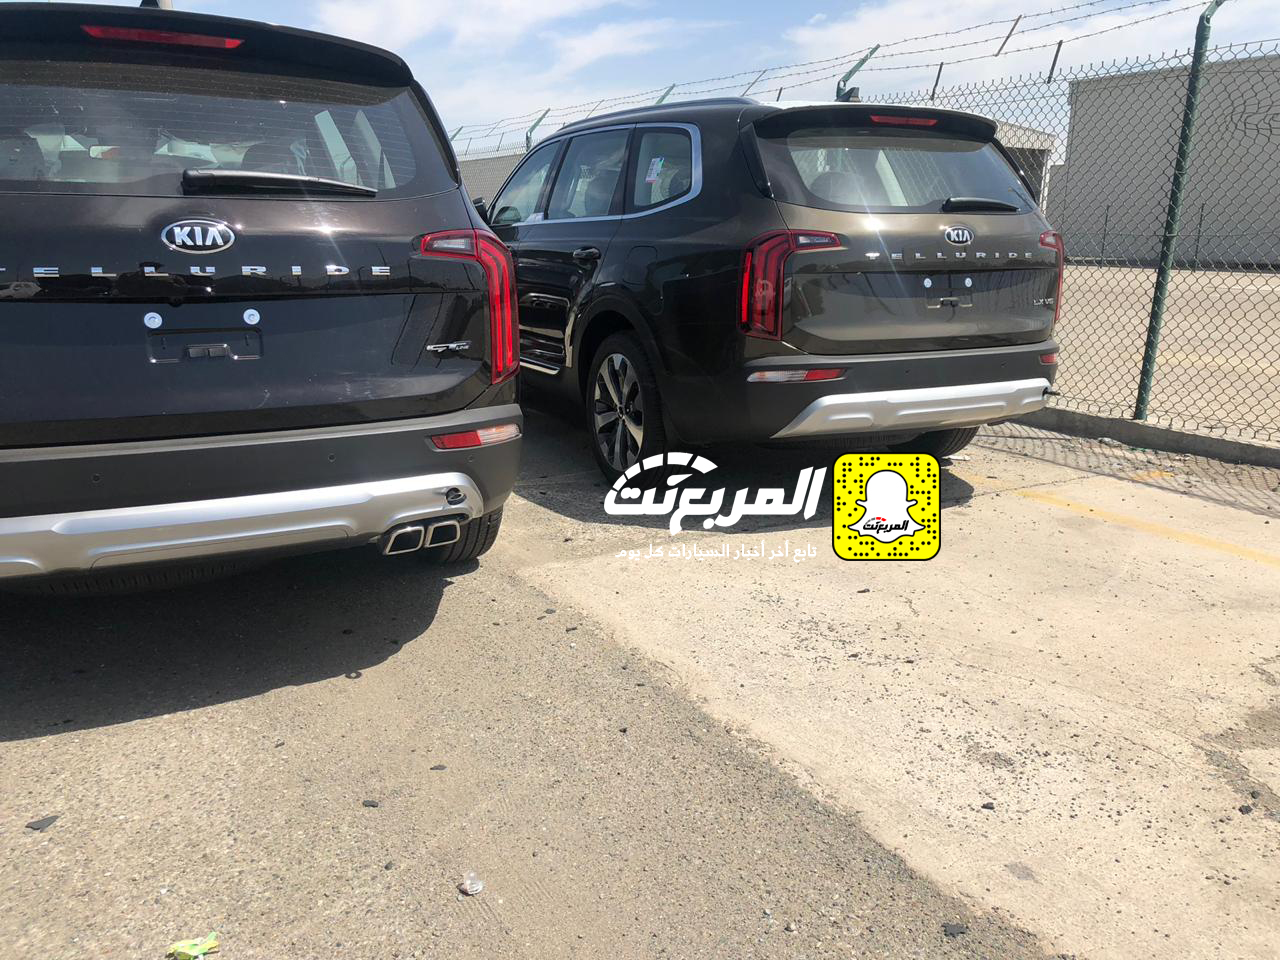 "بالصور" وصول كيا تيلورايد 2020 الجديدة الى السعودية اكبر SUV من كيا + موعد البيع الرسمي 3